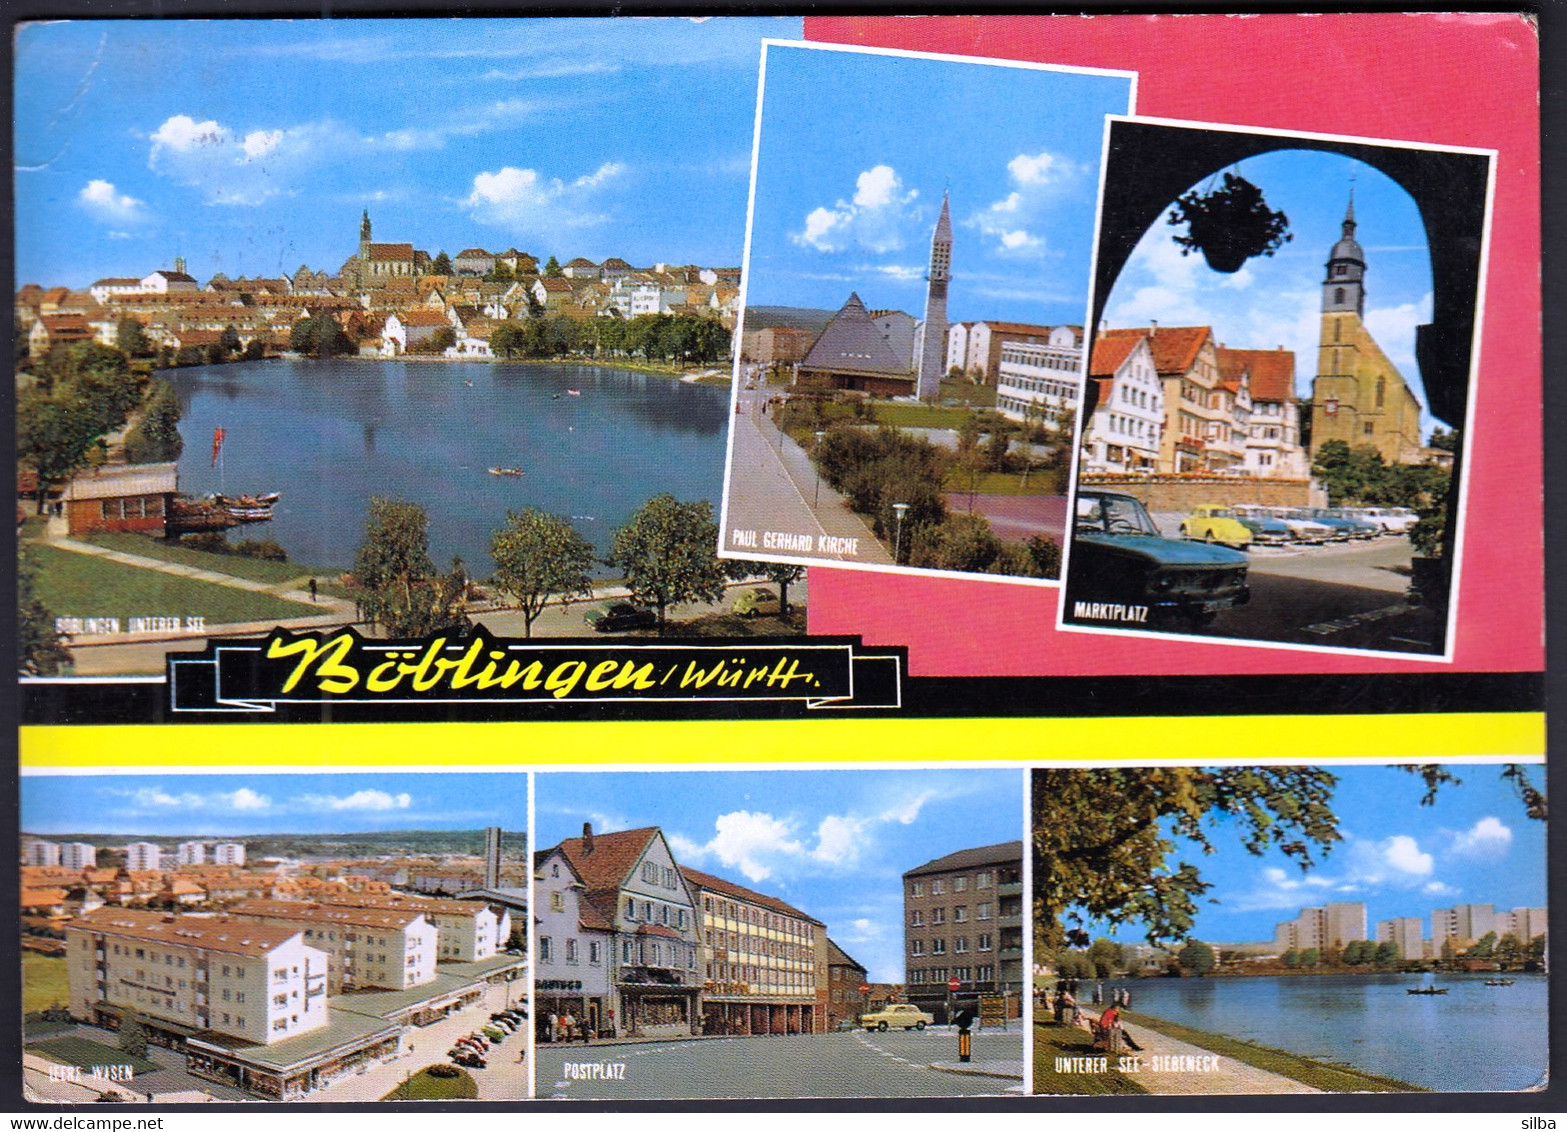 Germany Boeblingen 1974 / Böblingen / Württ. / Multi View, Lake, Church, Square, Car VW Beetle, Rowing Boats - Böblingen